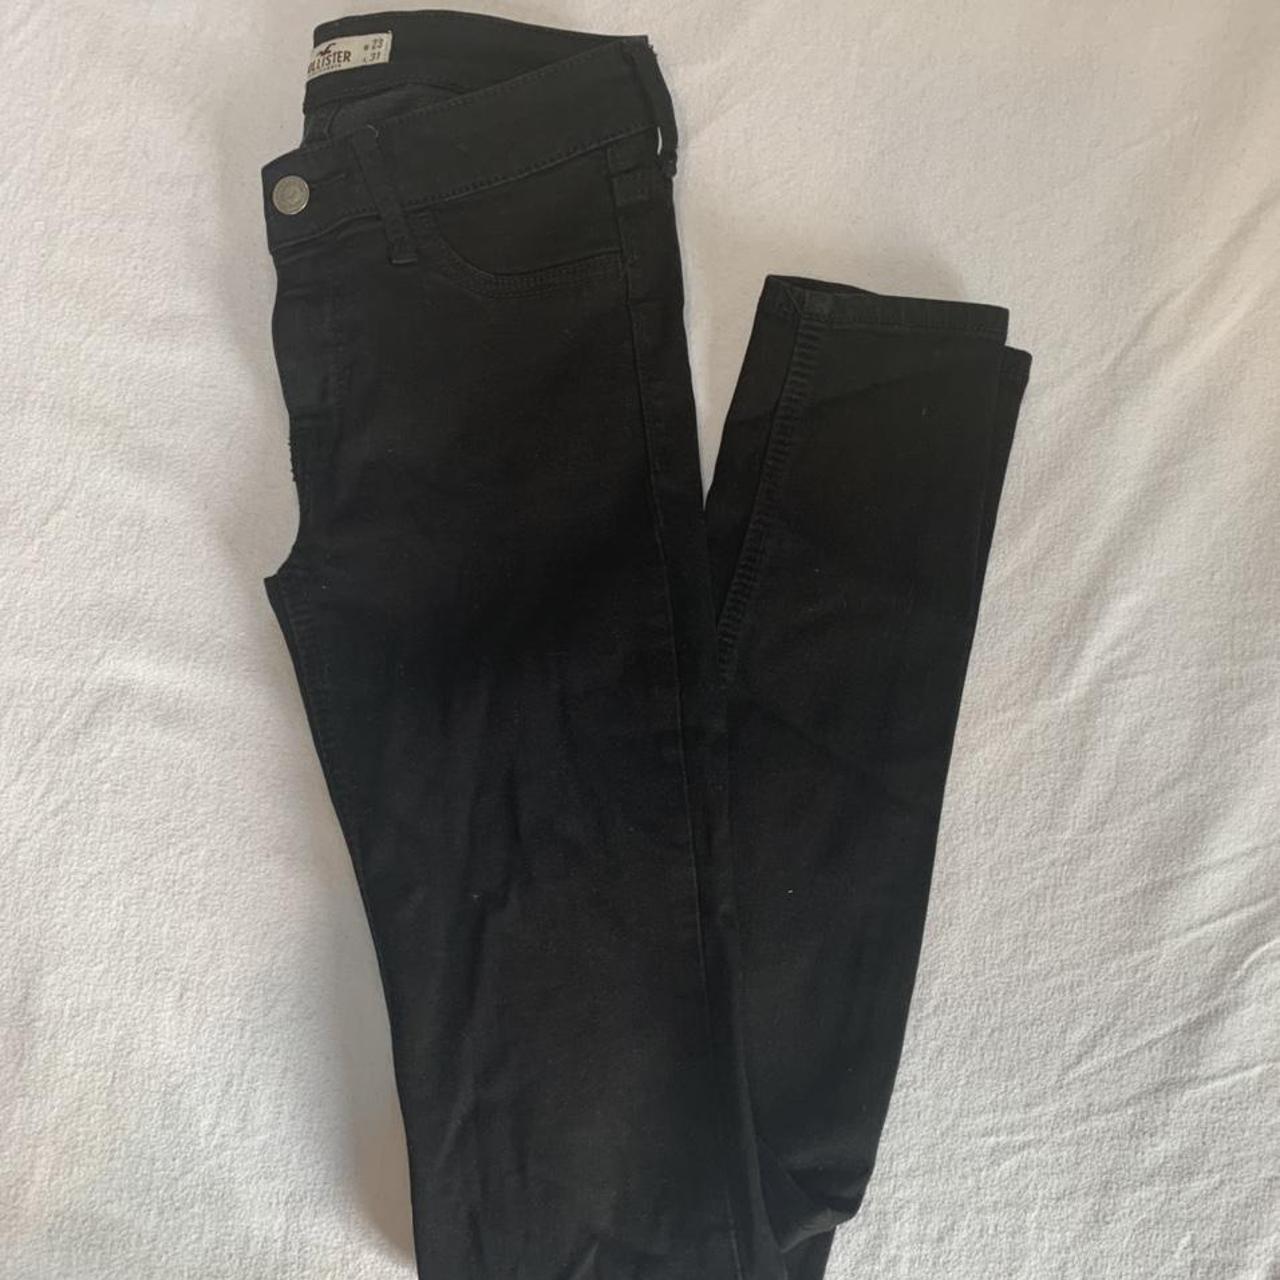 Hollister black skinny jeans, worn a few times, in... - Depop